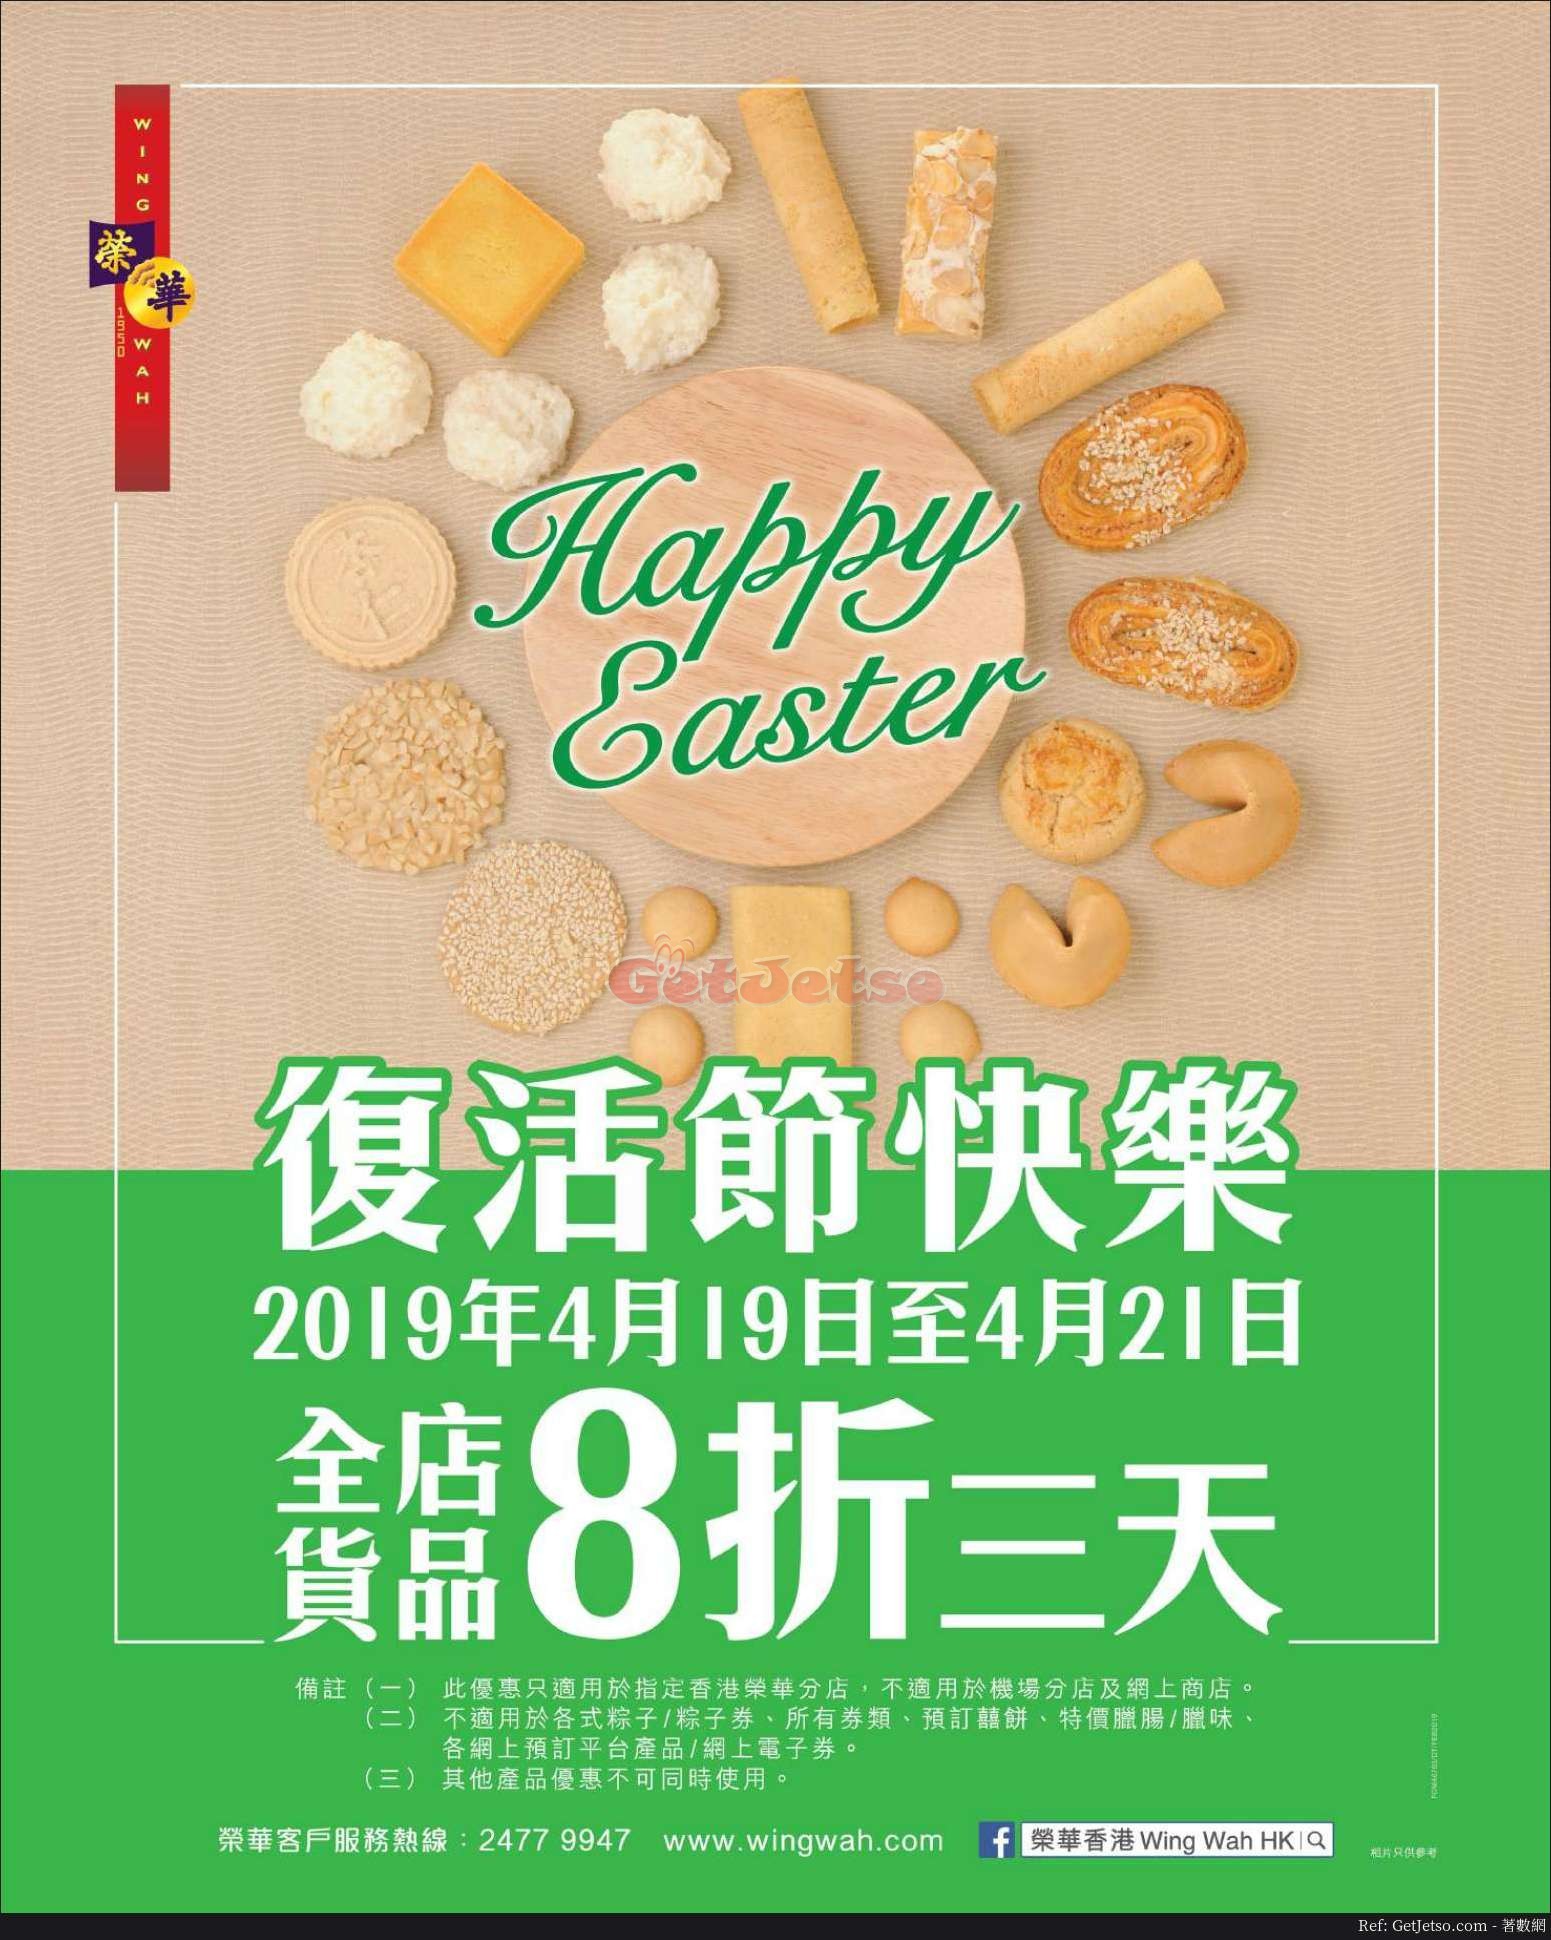 榮華餅家復活節8折優惠(19年4月19-21日)圖片1